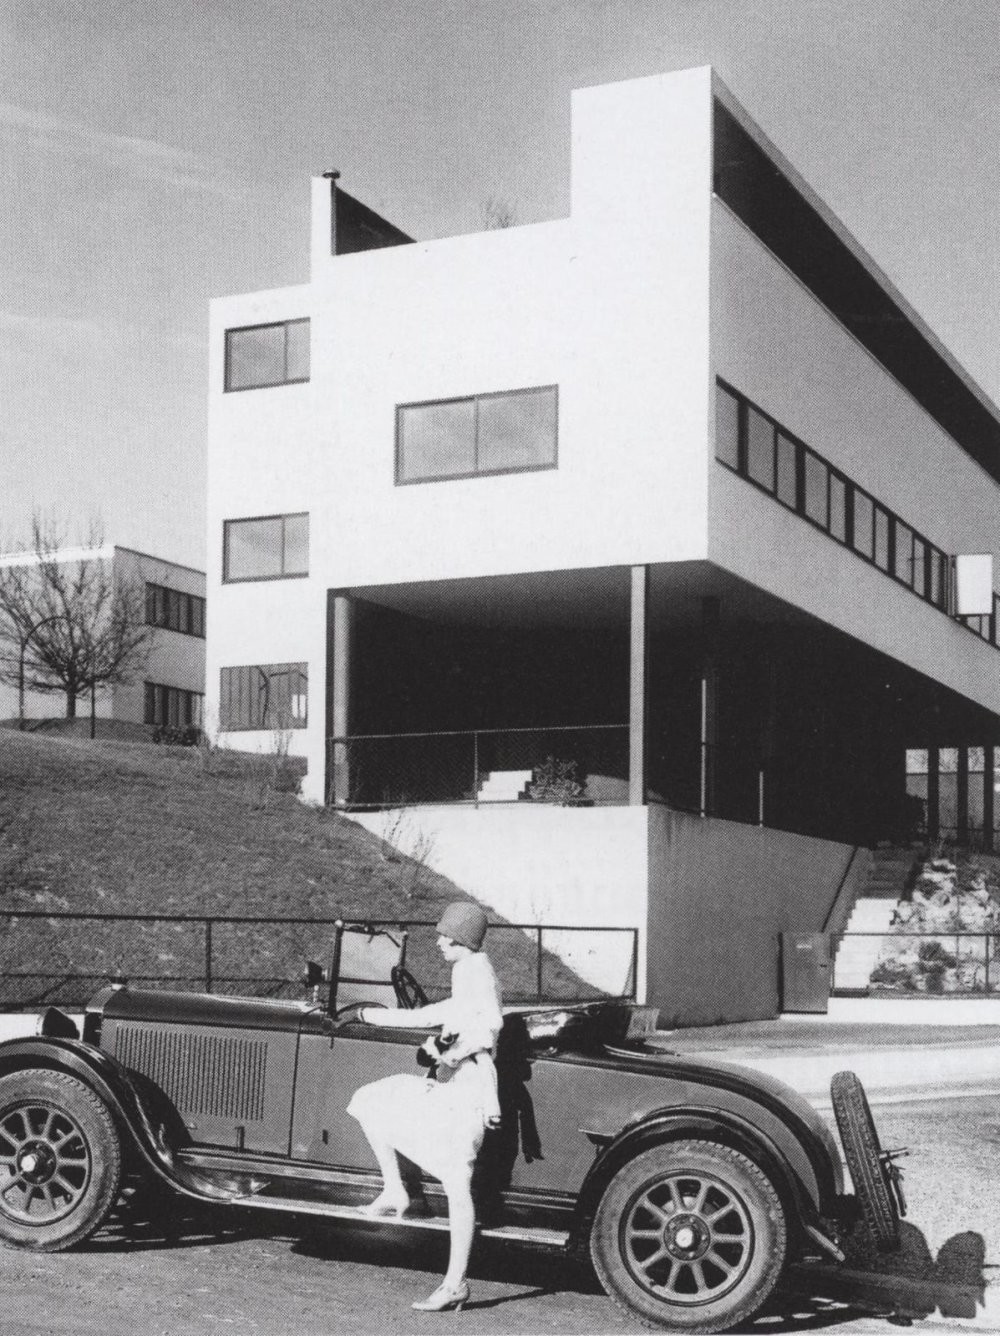 24. Дом в стиле баухаус, популярном в Германии в 1919-1933 годы. Фото 1927 года